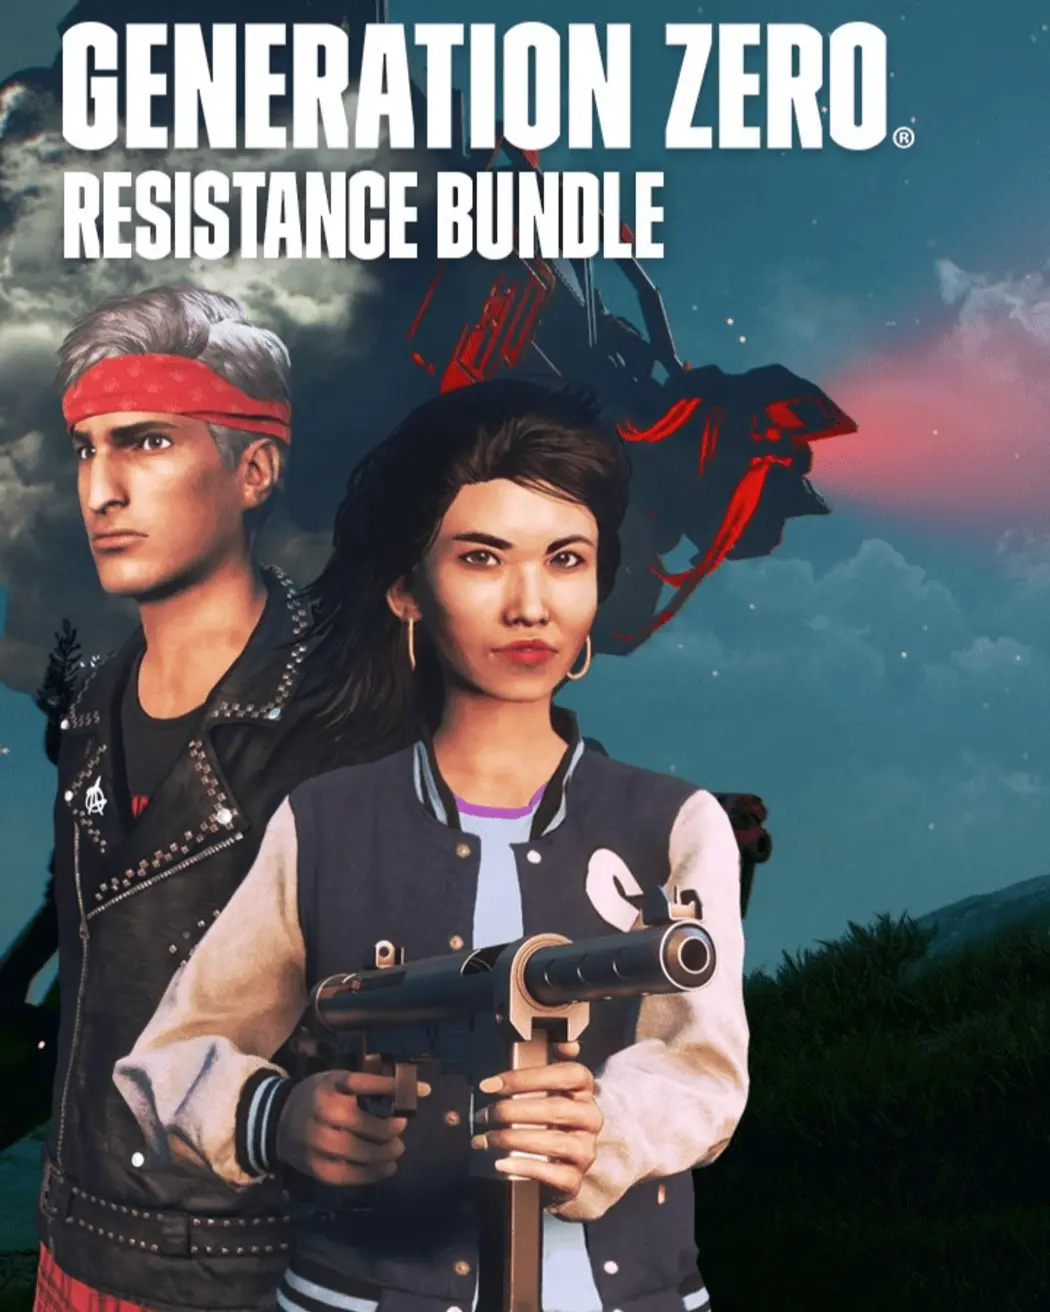 Generation Zero Resistance Bundle (AR) (Xbox One / Xbox Series X|S) - Xbox Live - Digital Code